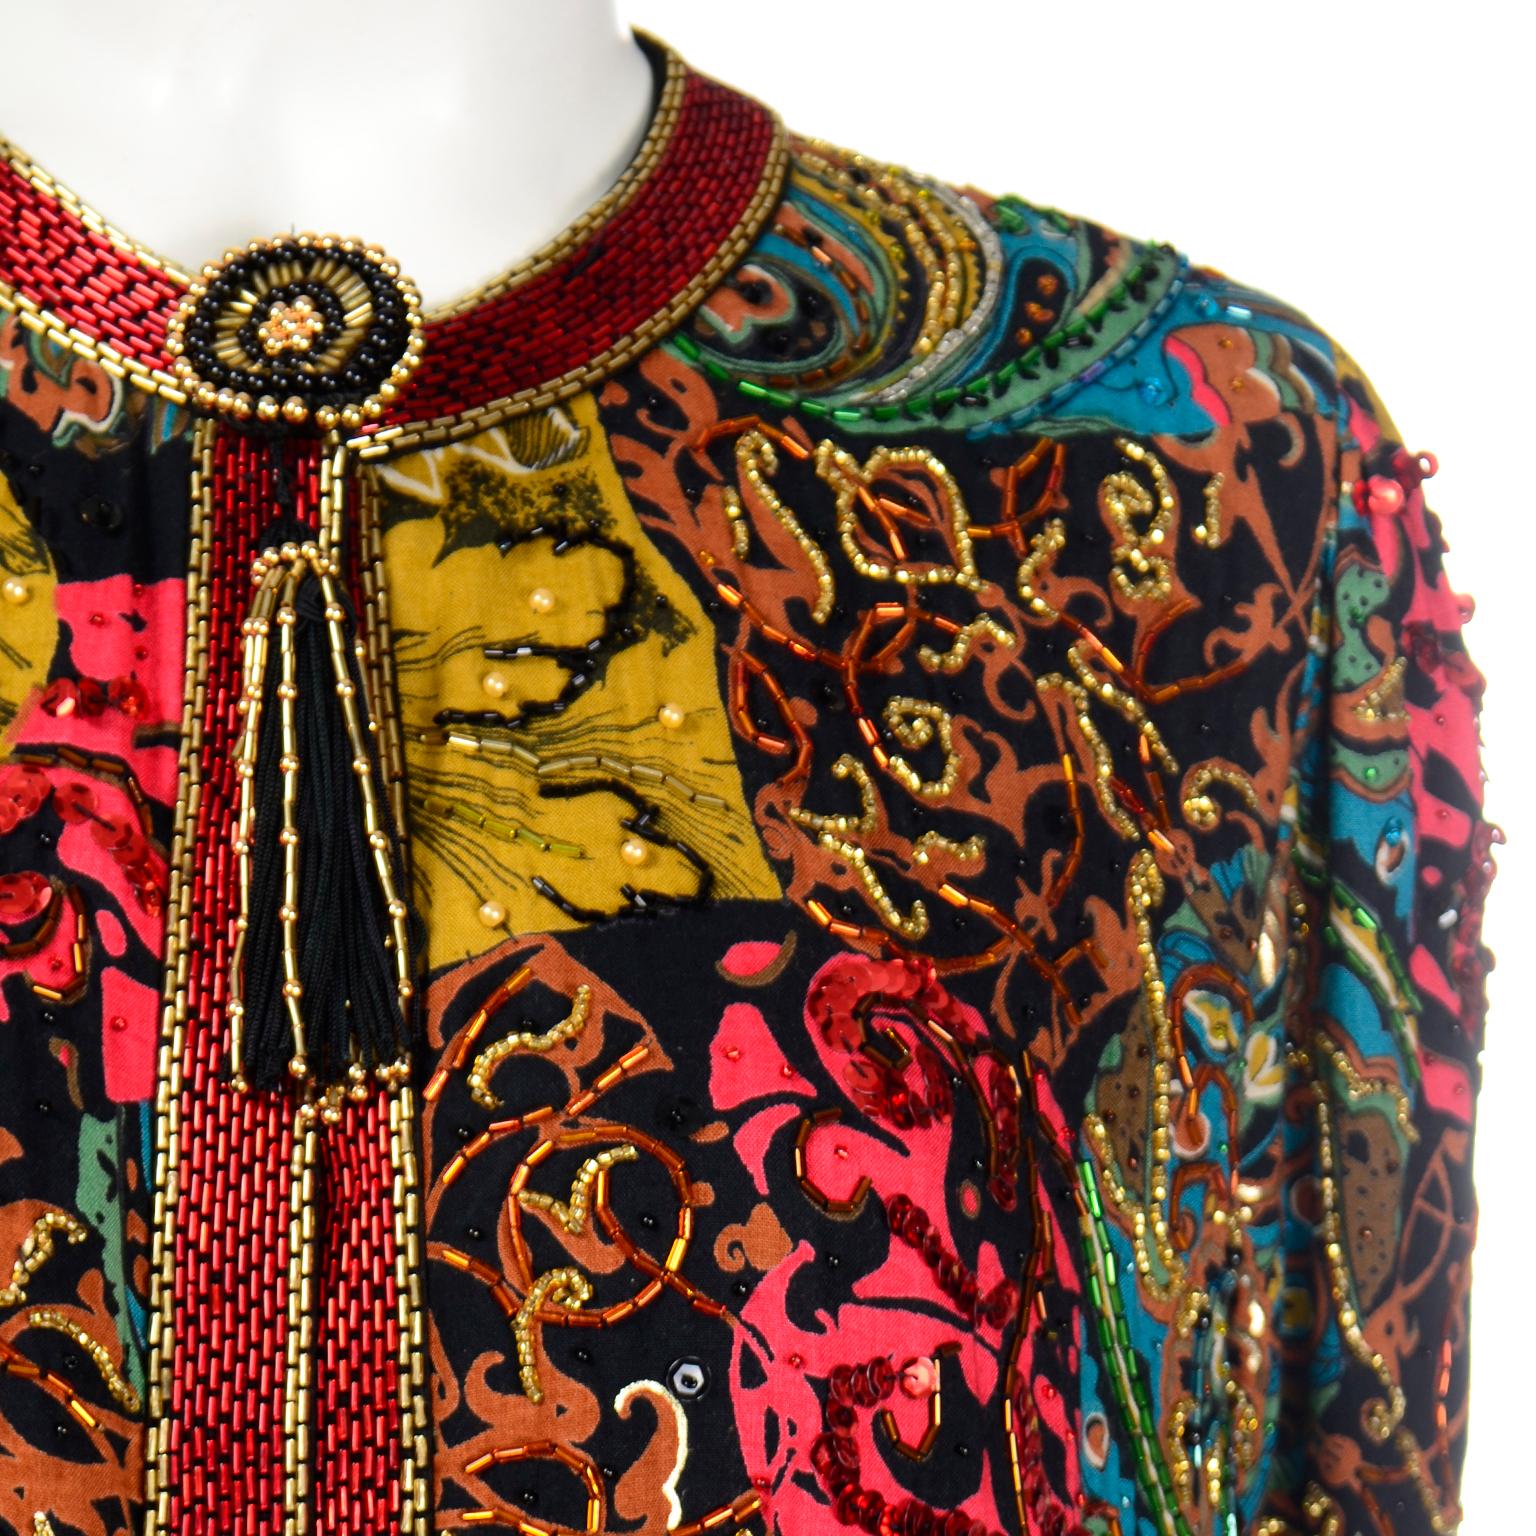 Vintage Diane Freis Beaded Sequin Swing Jacket in Multi Colored Baroque Print 3